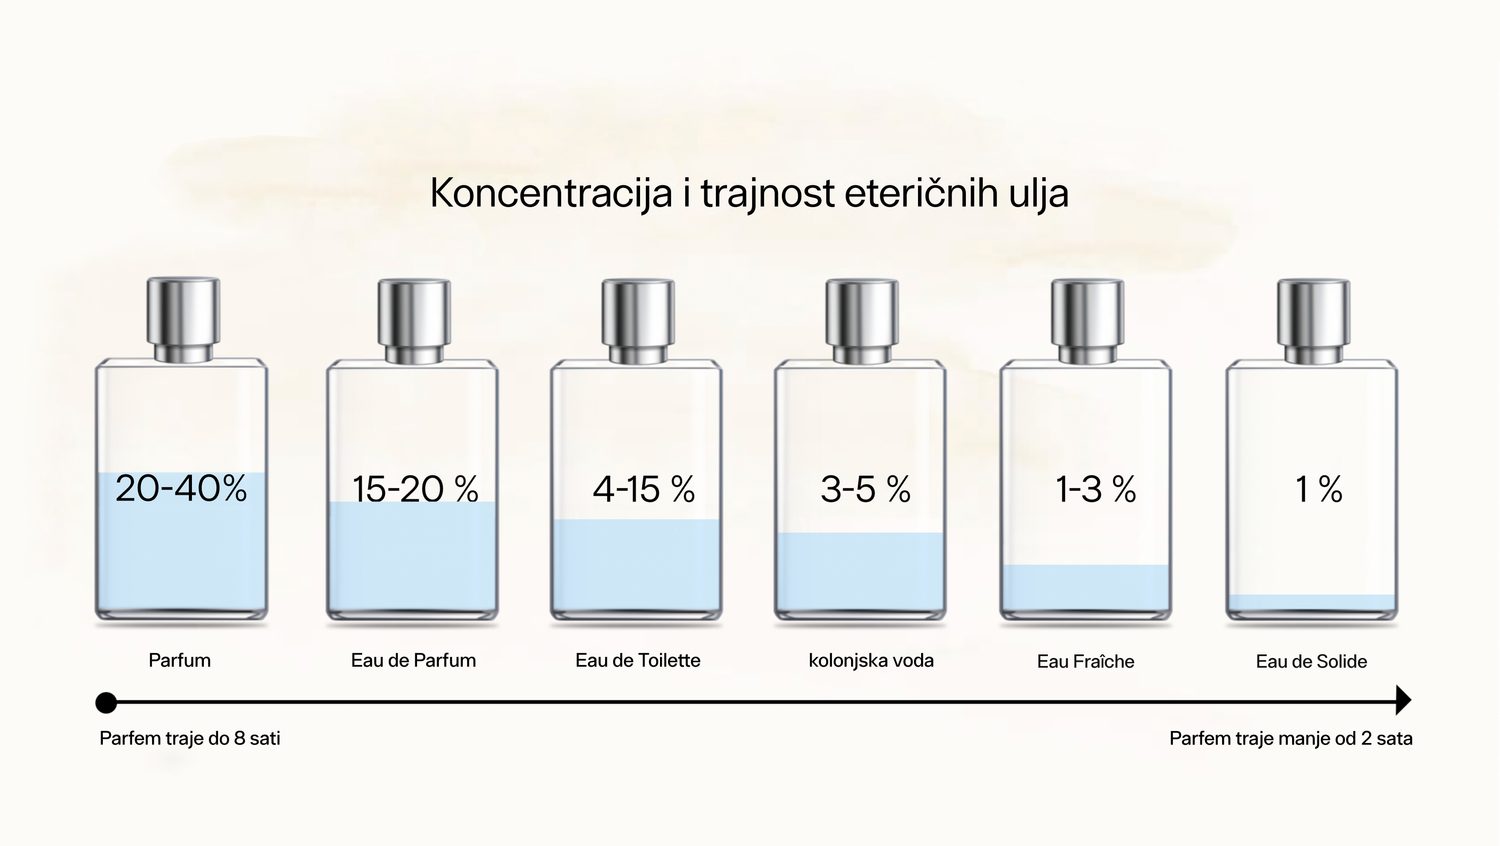 Gentleman Store - Koristite li miris ili parfem? Znate li koja je razlika  među njima?